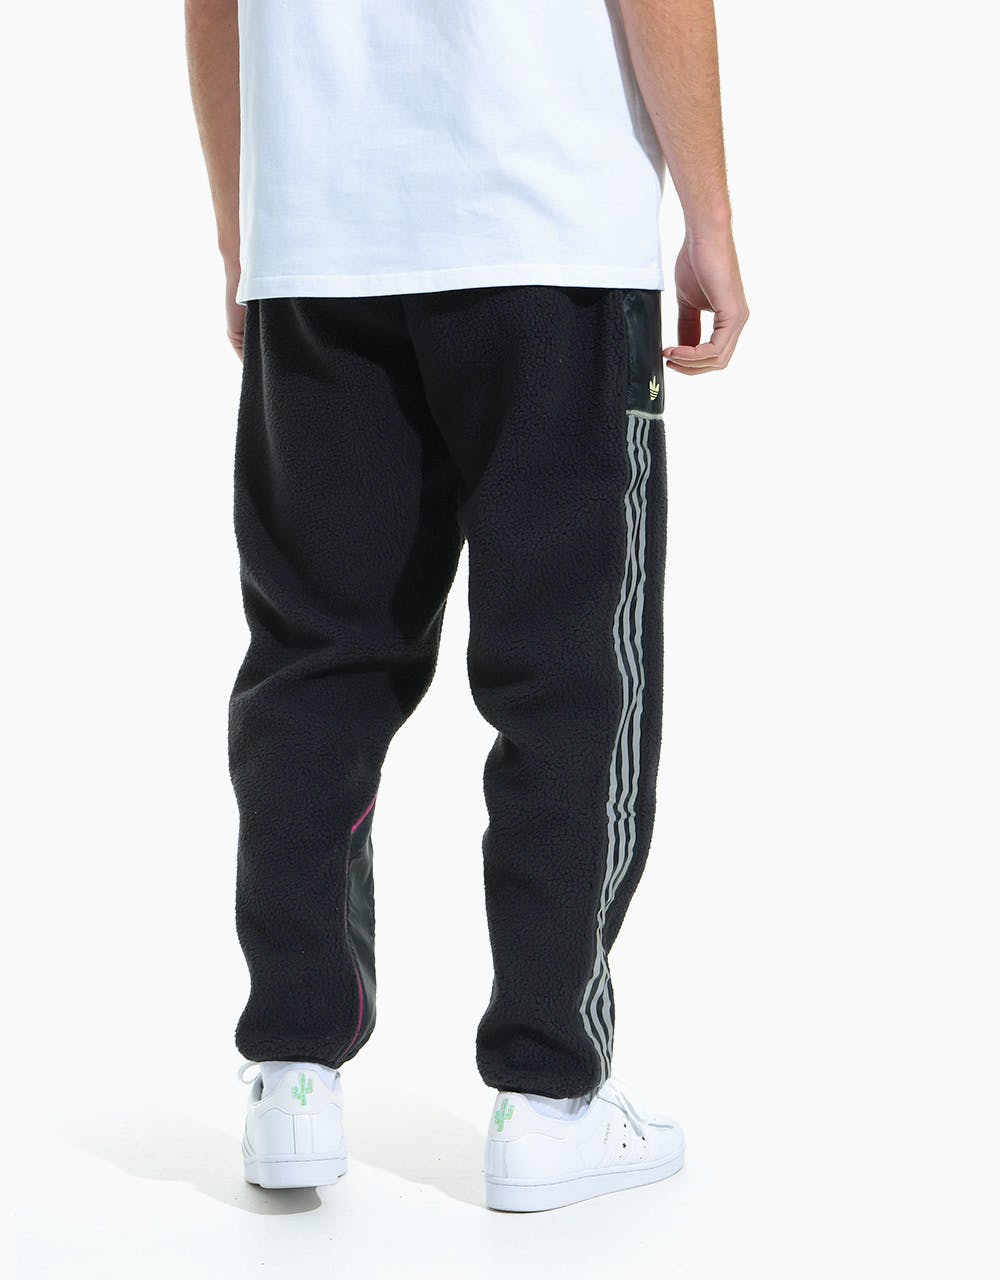 Adidas x Metropolitan Fleece Pants - Black/Yellow Tint/Real Magenta